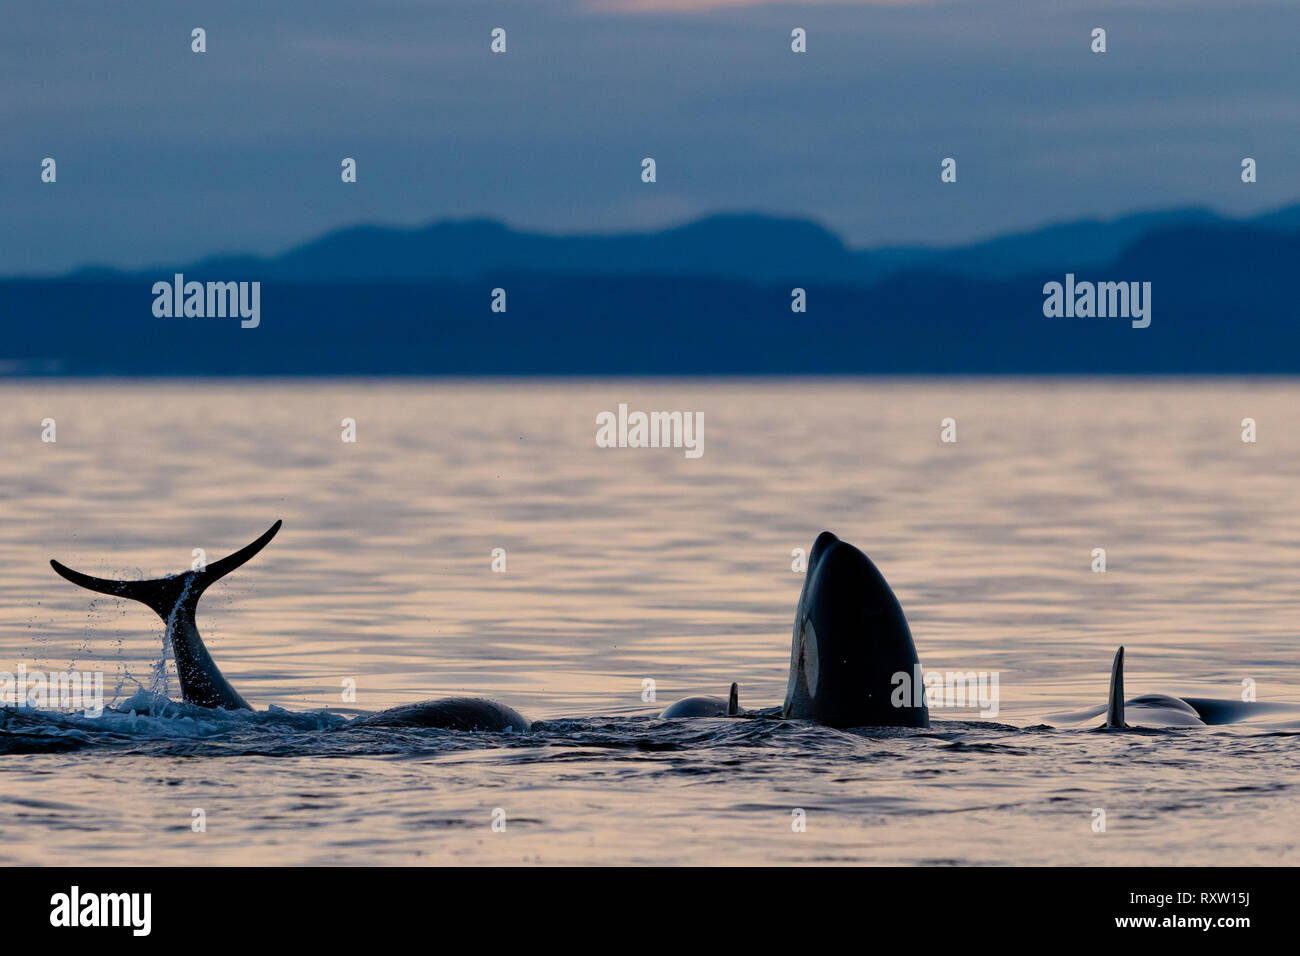 Orche assassine residenti del nord (Orcinus orca) A24's e Adires's giocando, spruzzi di coda e salti spia durante il tramonto nello stretto di Queen Charlotte al largo di Vancouver Island, territorio delle prime Nazioni, British Columbia, Canada. Foto Stock